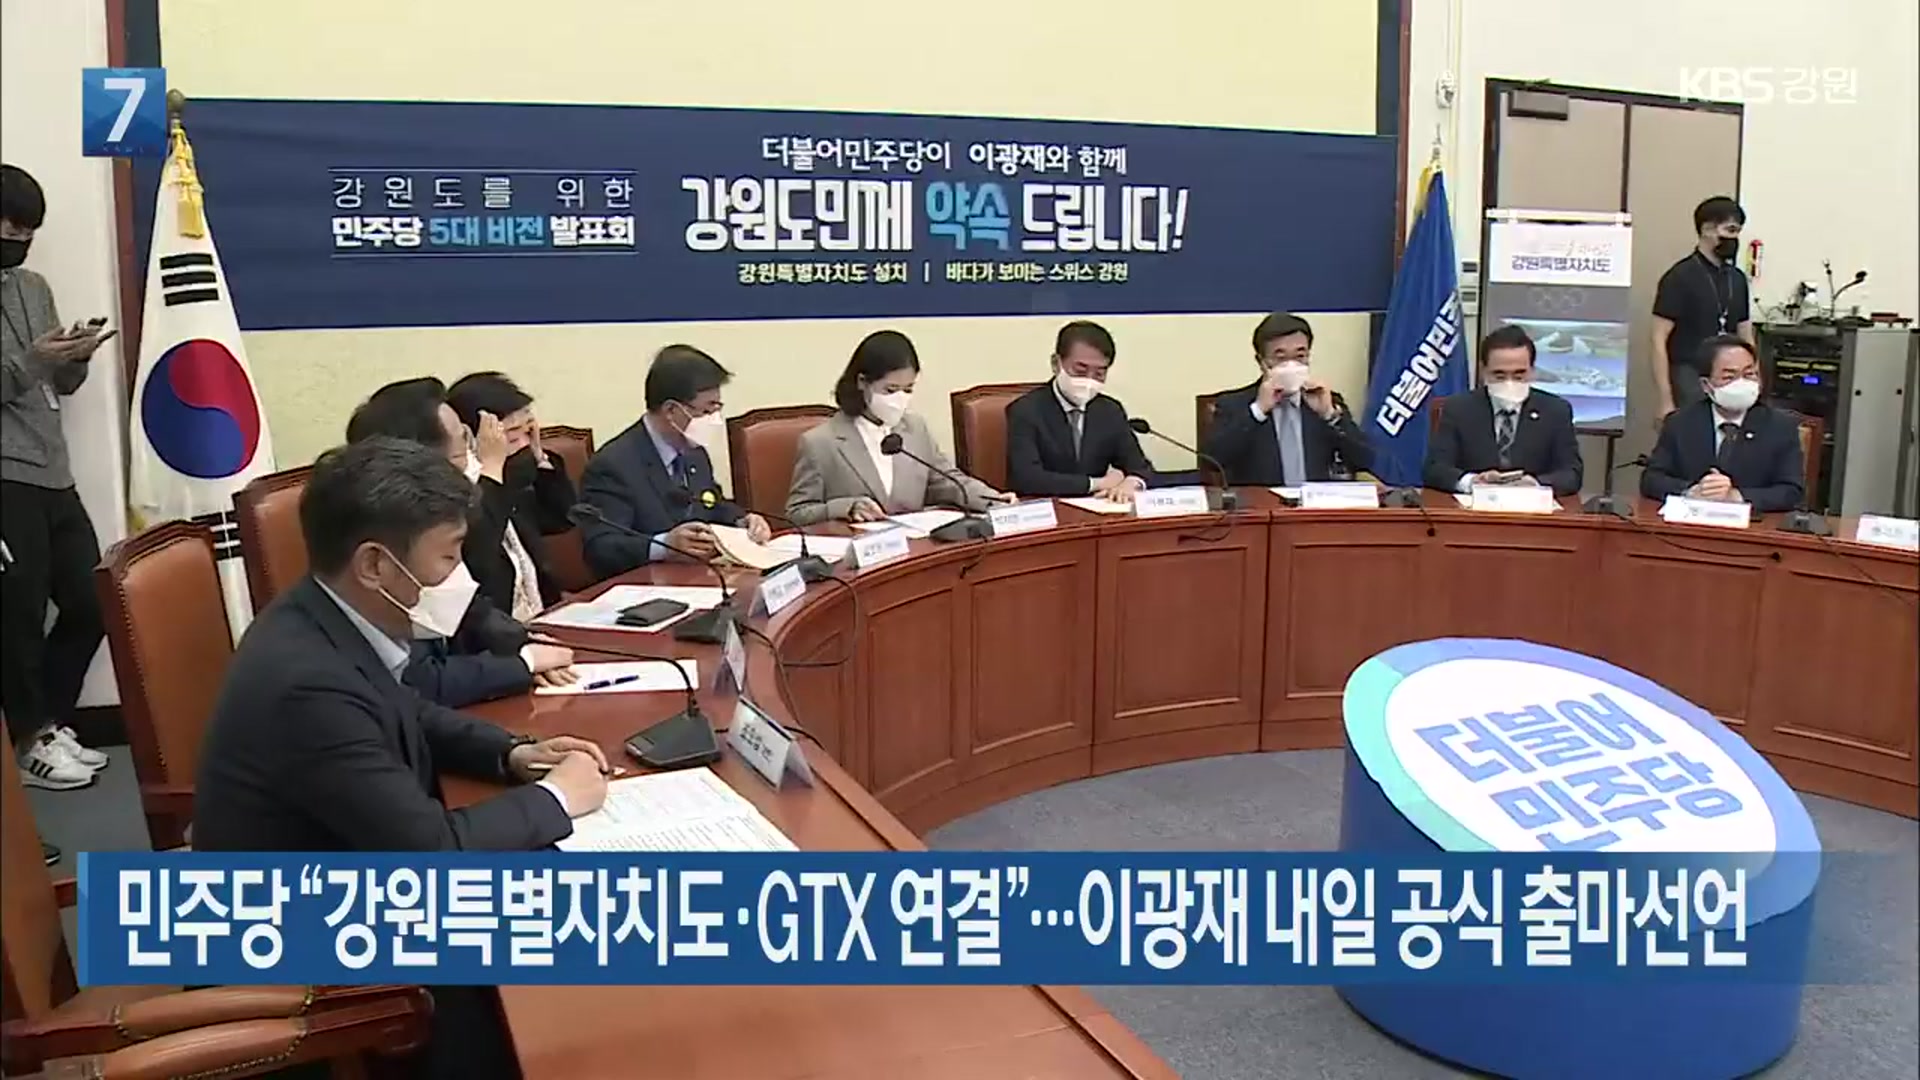 민주당 “강원특별자치도·GTX 연결”…이광재 내일 공식 출마선언